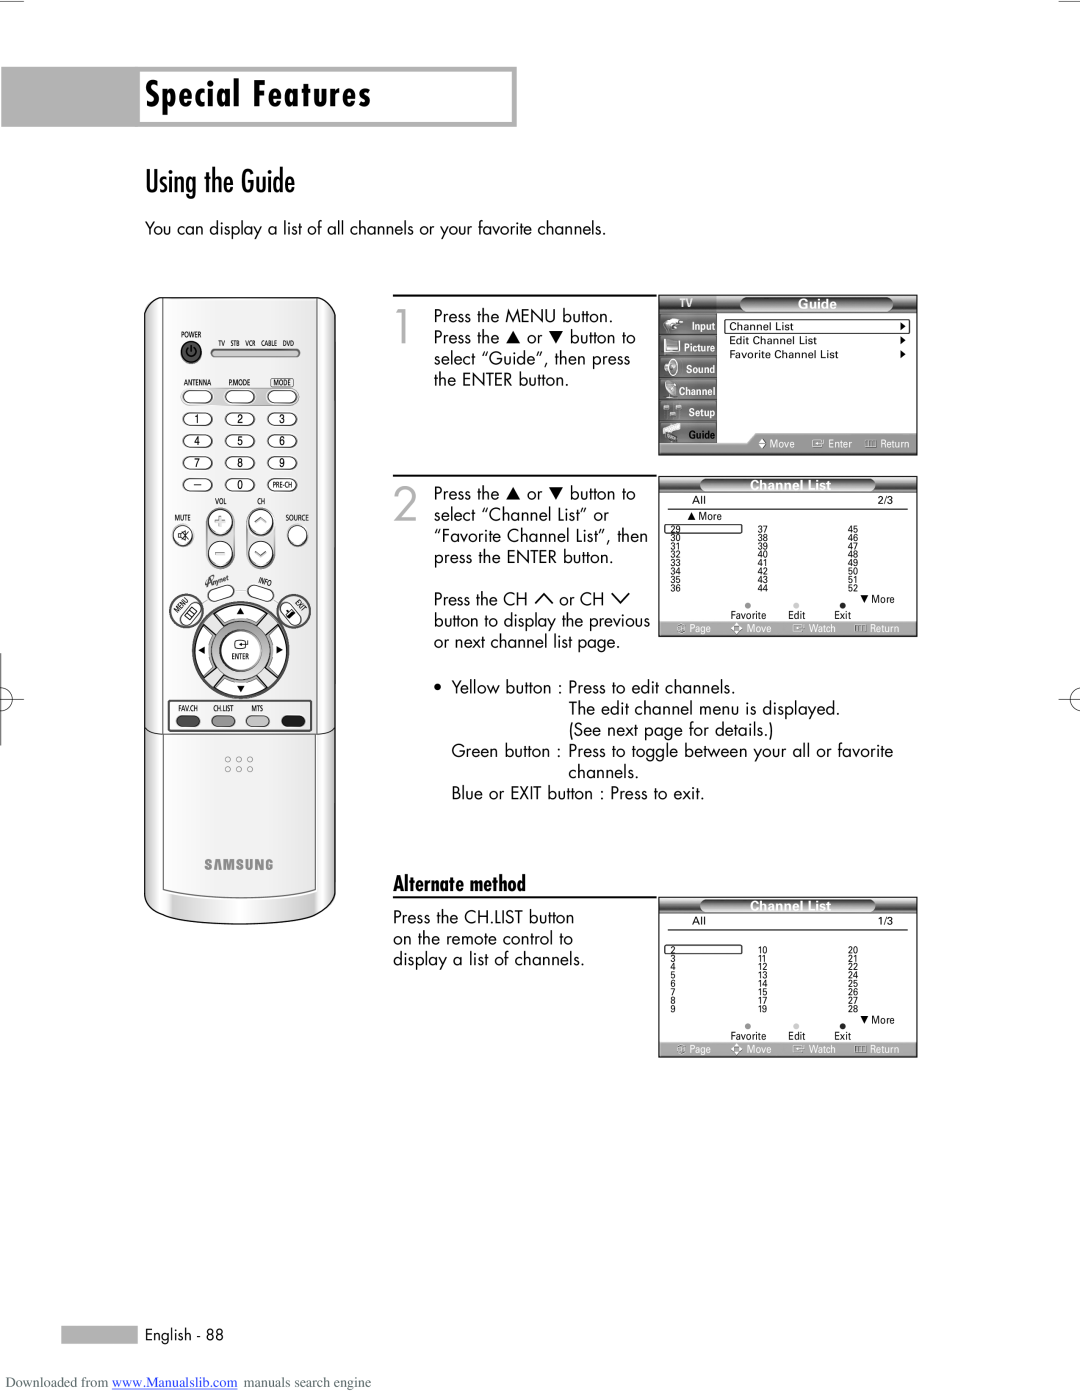 Samsung HL-R5656W, HL-R6156W, HL-R5056W manual Using the Guide, Special Features, Alternate method 